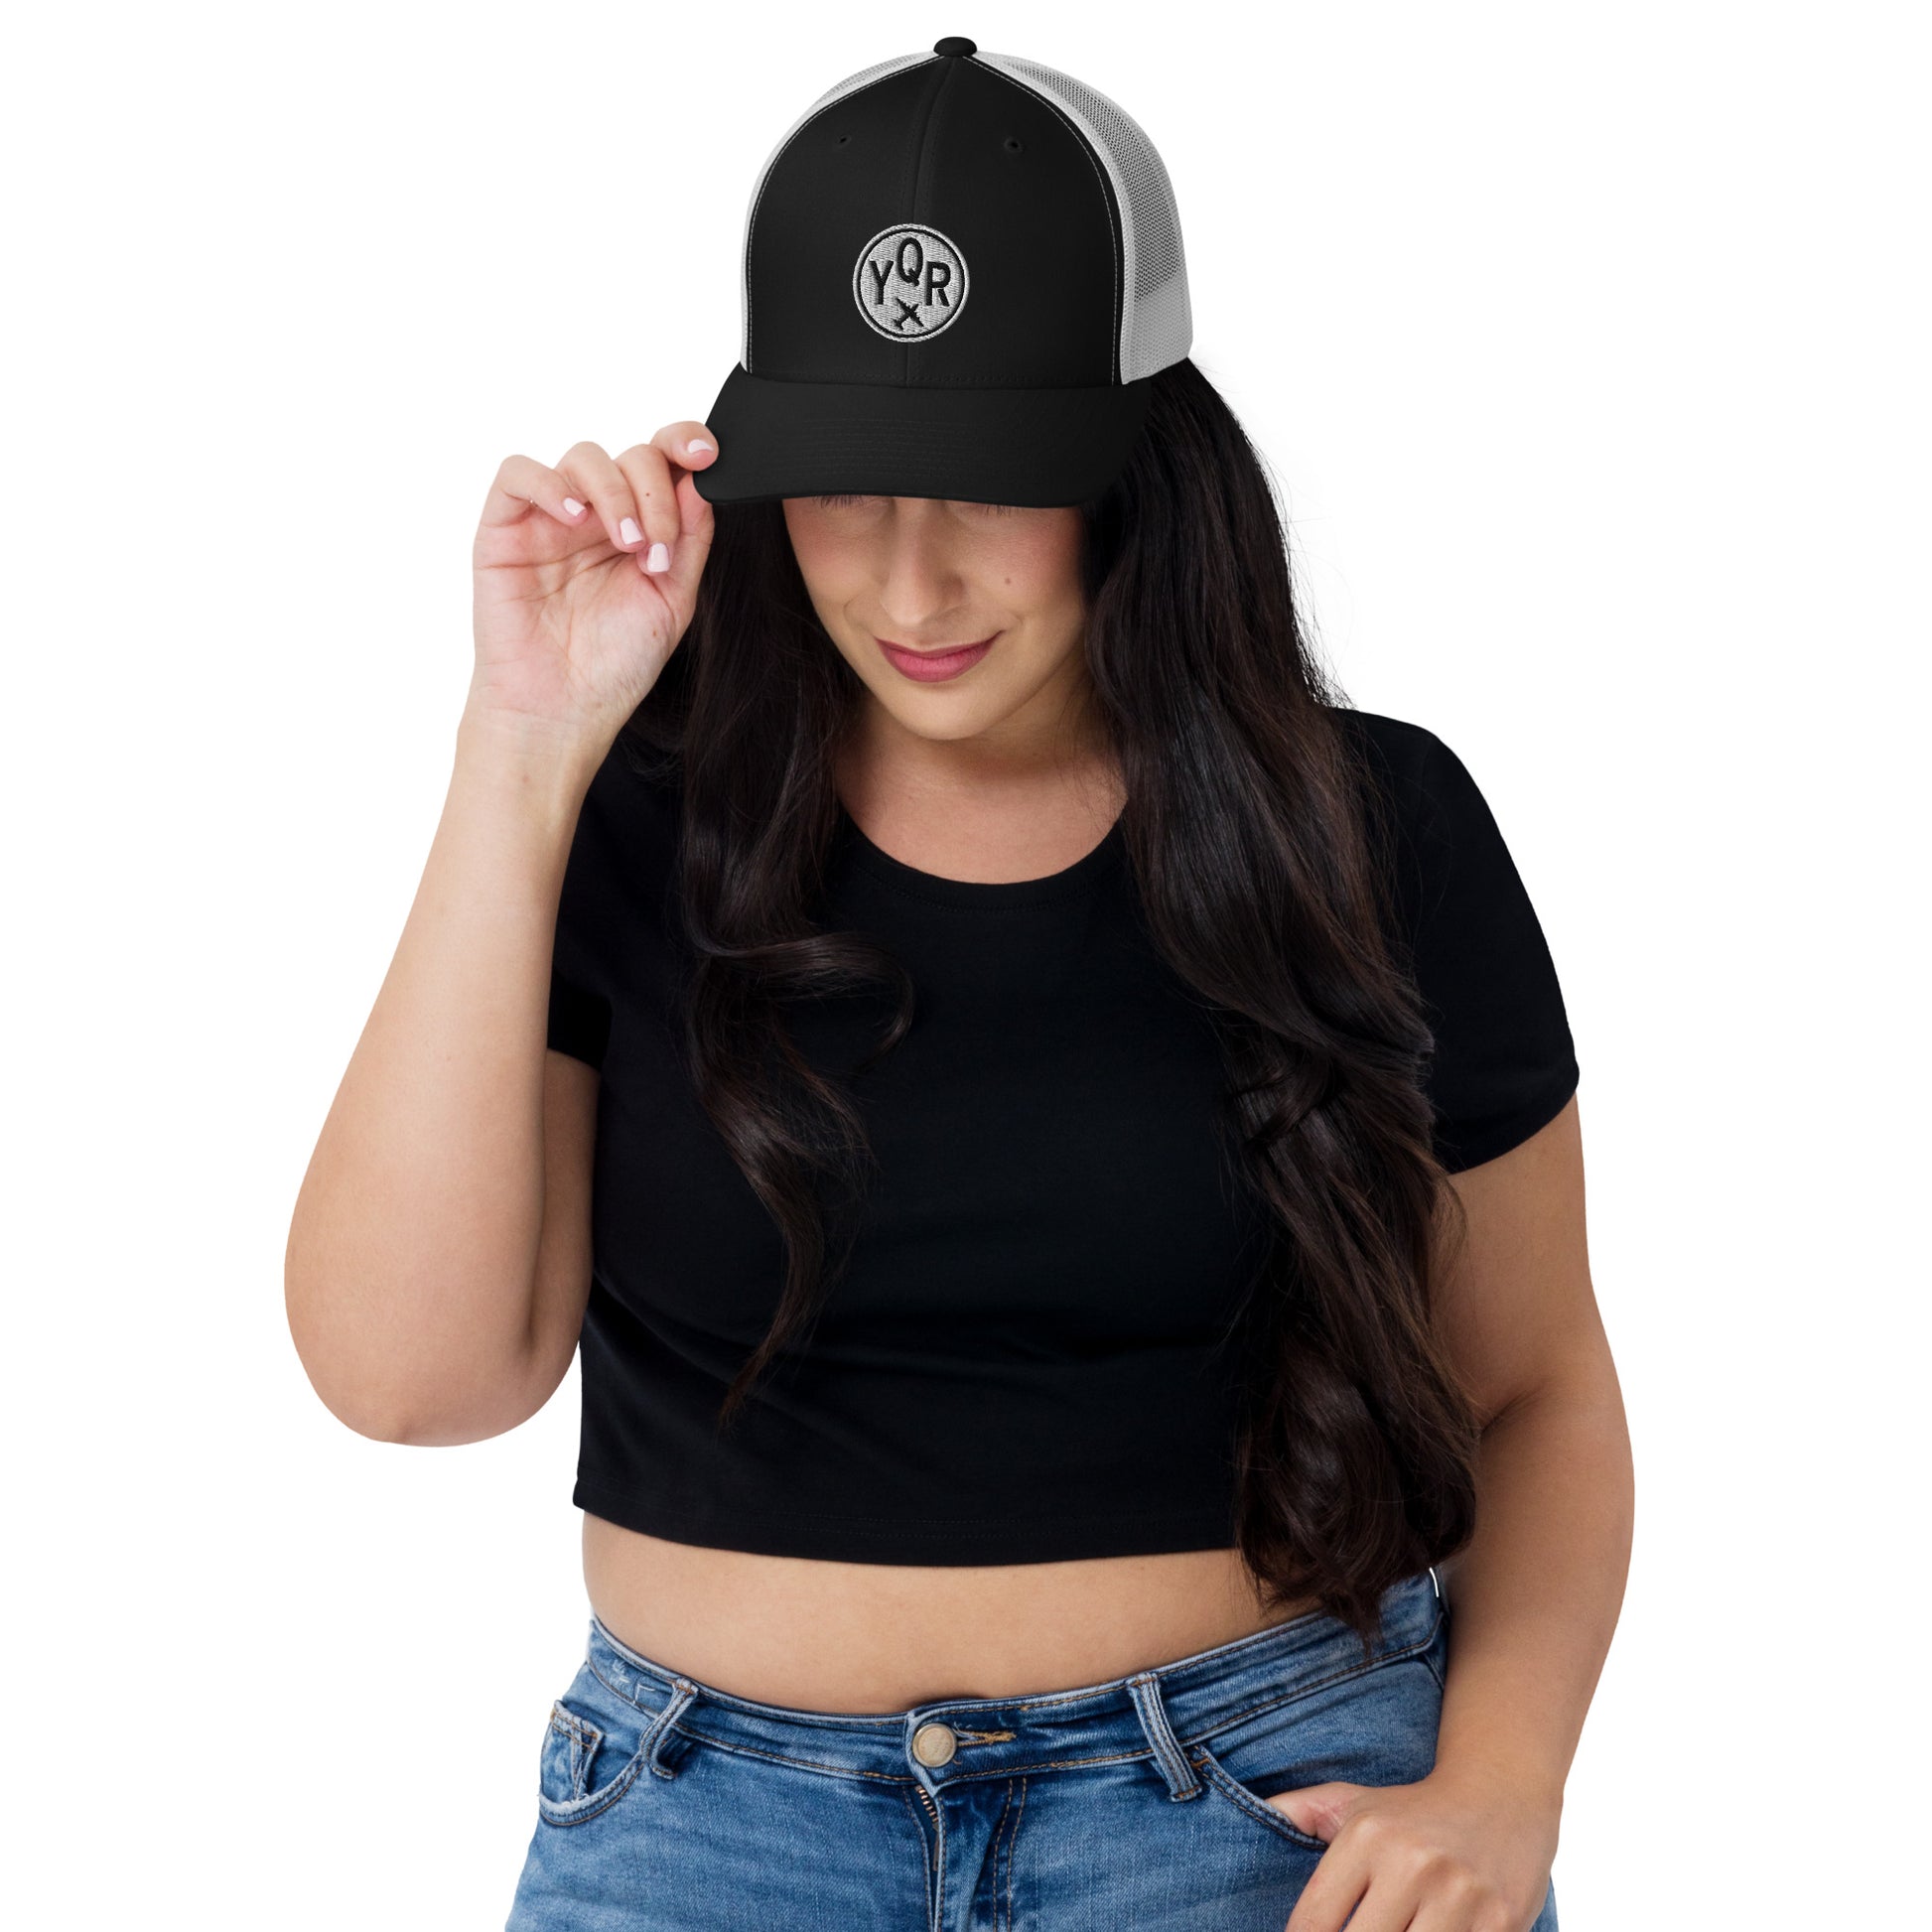 Roundel Trucker Hat - Black & White • YQR Regina • YHM Designs - Image 05